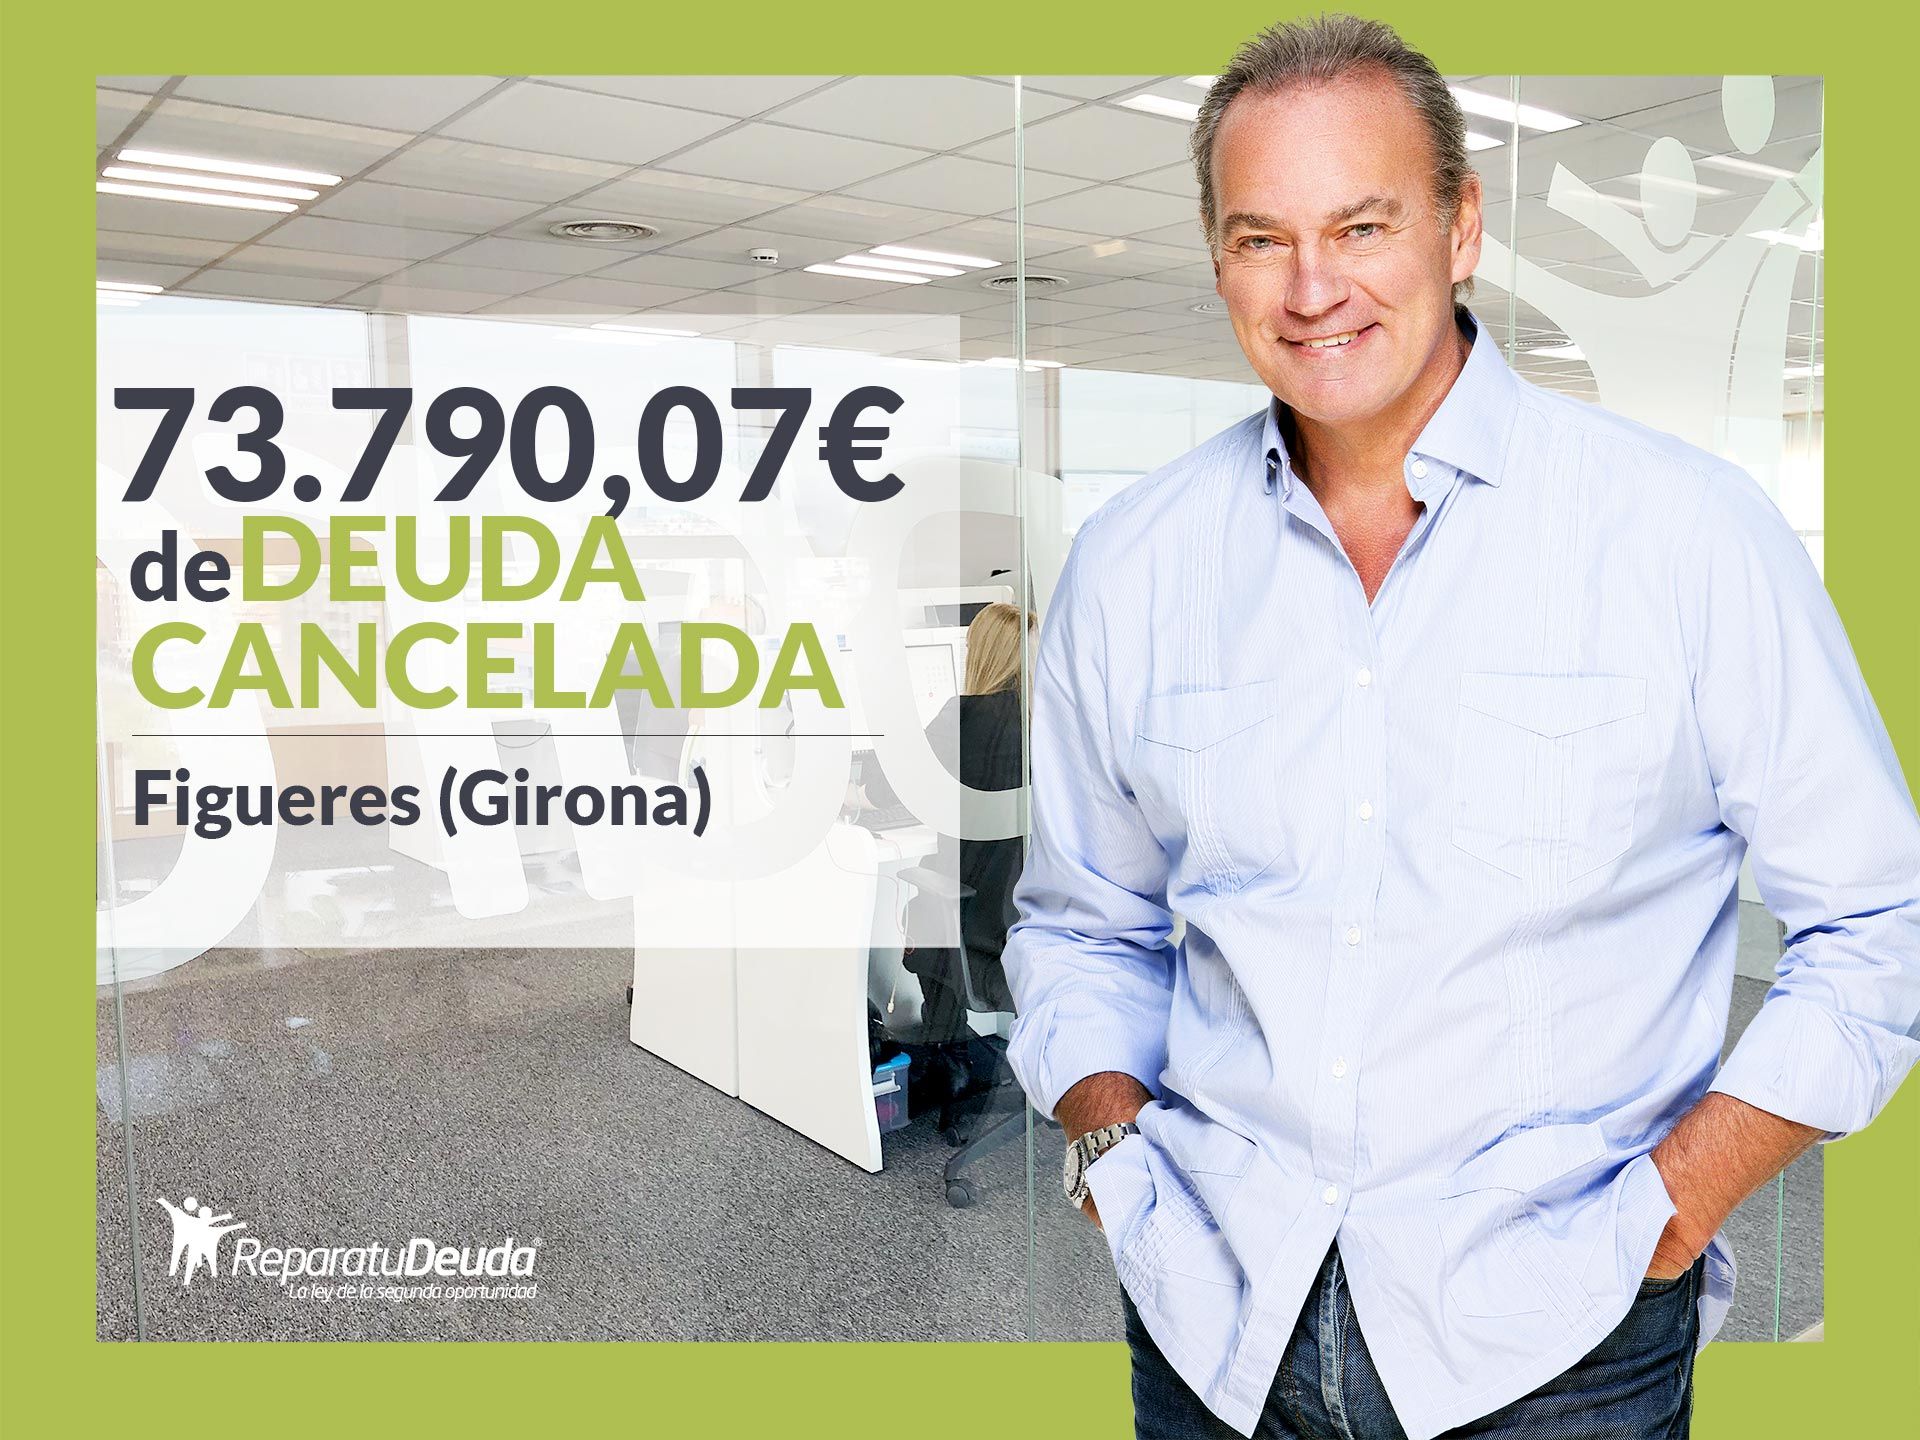 Repara tu Deuda Abogados cancela 73.790,07? en Figueres (Girona) con la Ley de la Segunda Oportunidad